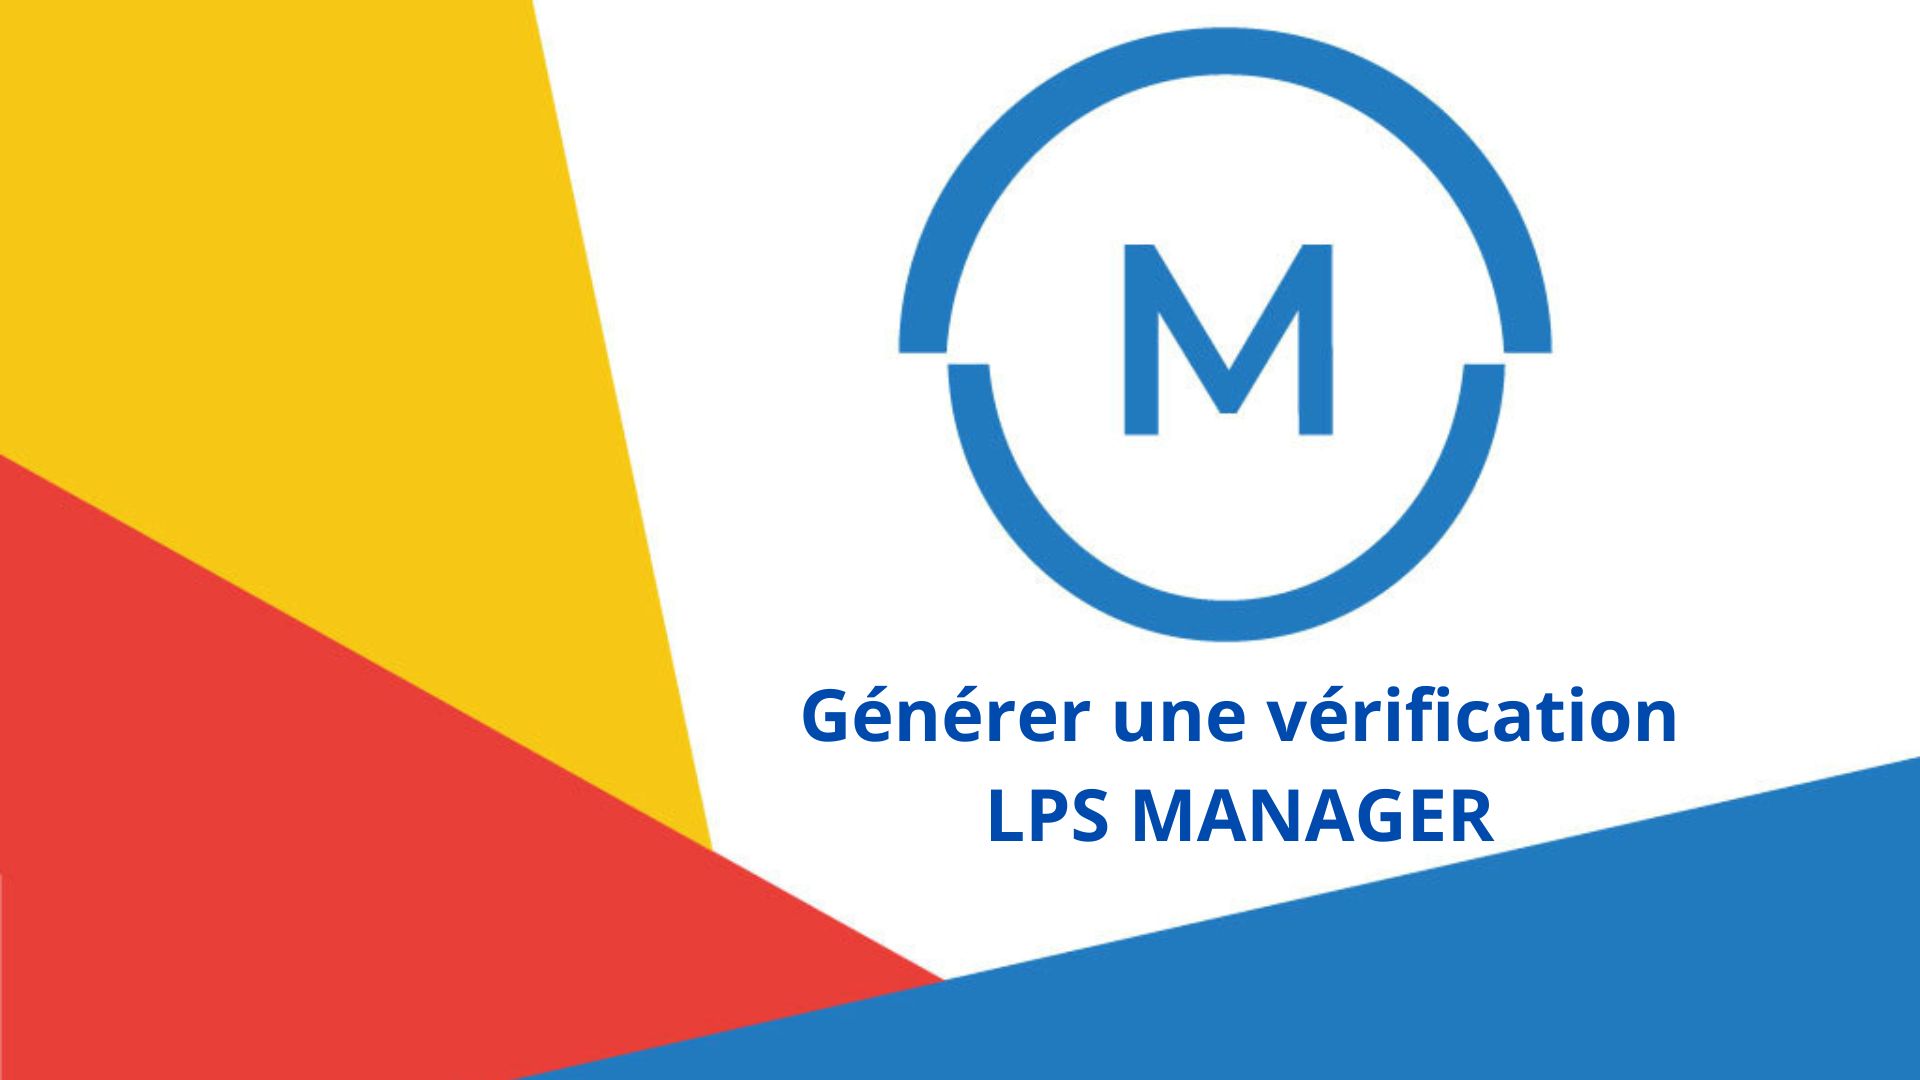 LPS Manager, générer une vérification du système de protection contre la foudre